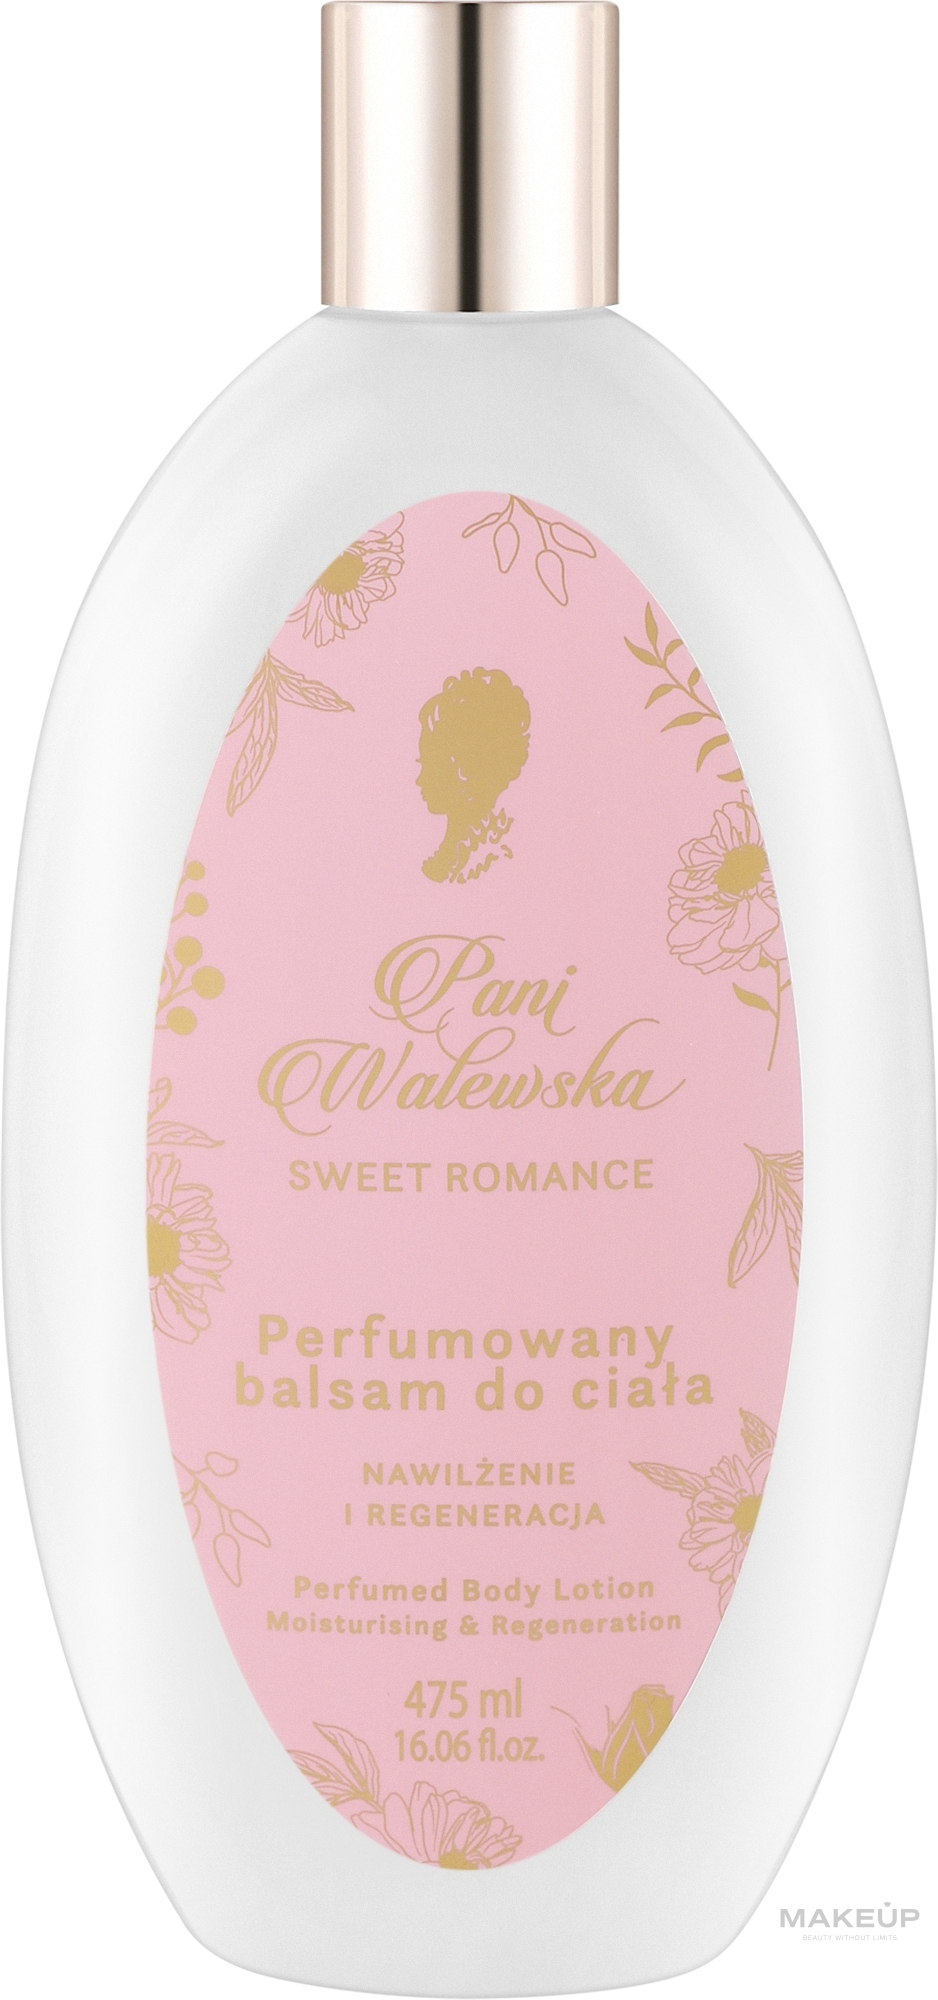 Pani Walewska Sweet Romance Perfumed Body Lotion - Парфюмированный лосьон для тела — фото 475ml